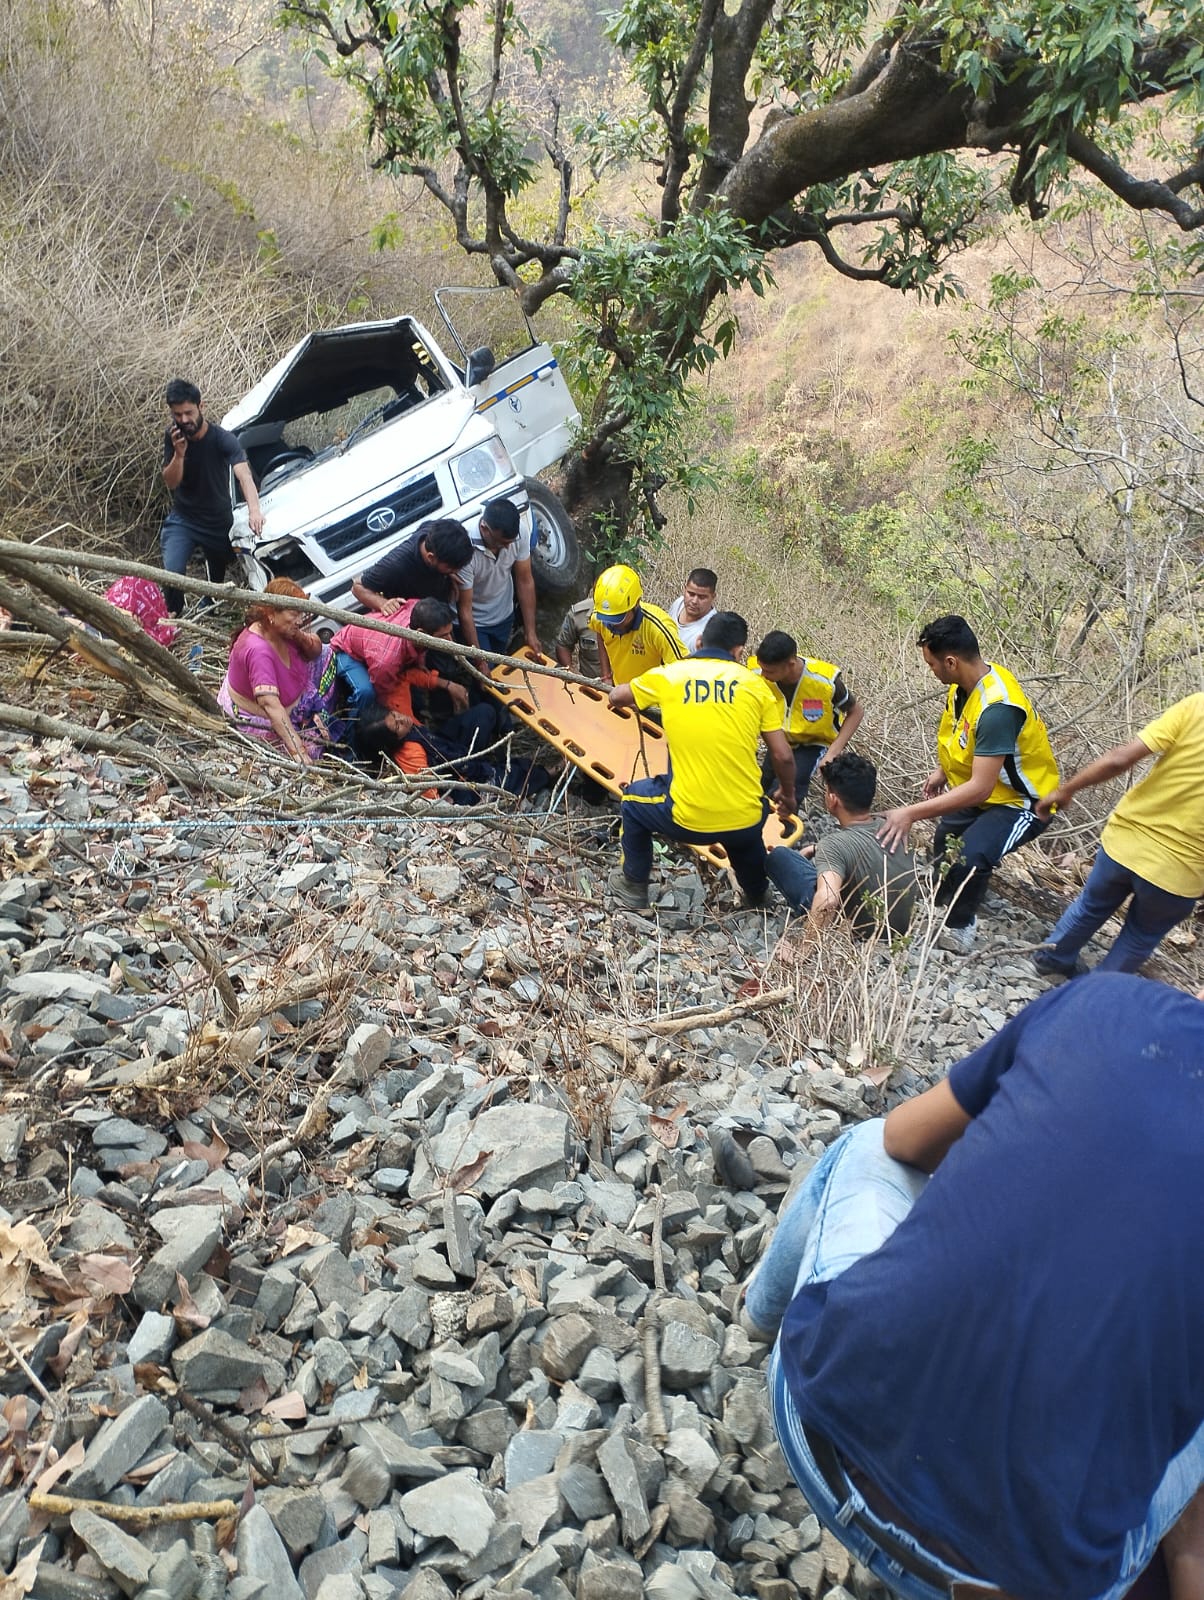 जनपद पौड़ी में दुर्घटनाग्रस्त हुआ वाहन, 09 लोगों को एसडीआरएफ ने रेस्क्यू कर बचाया।